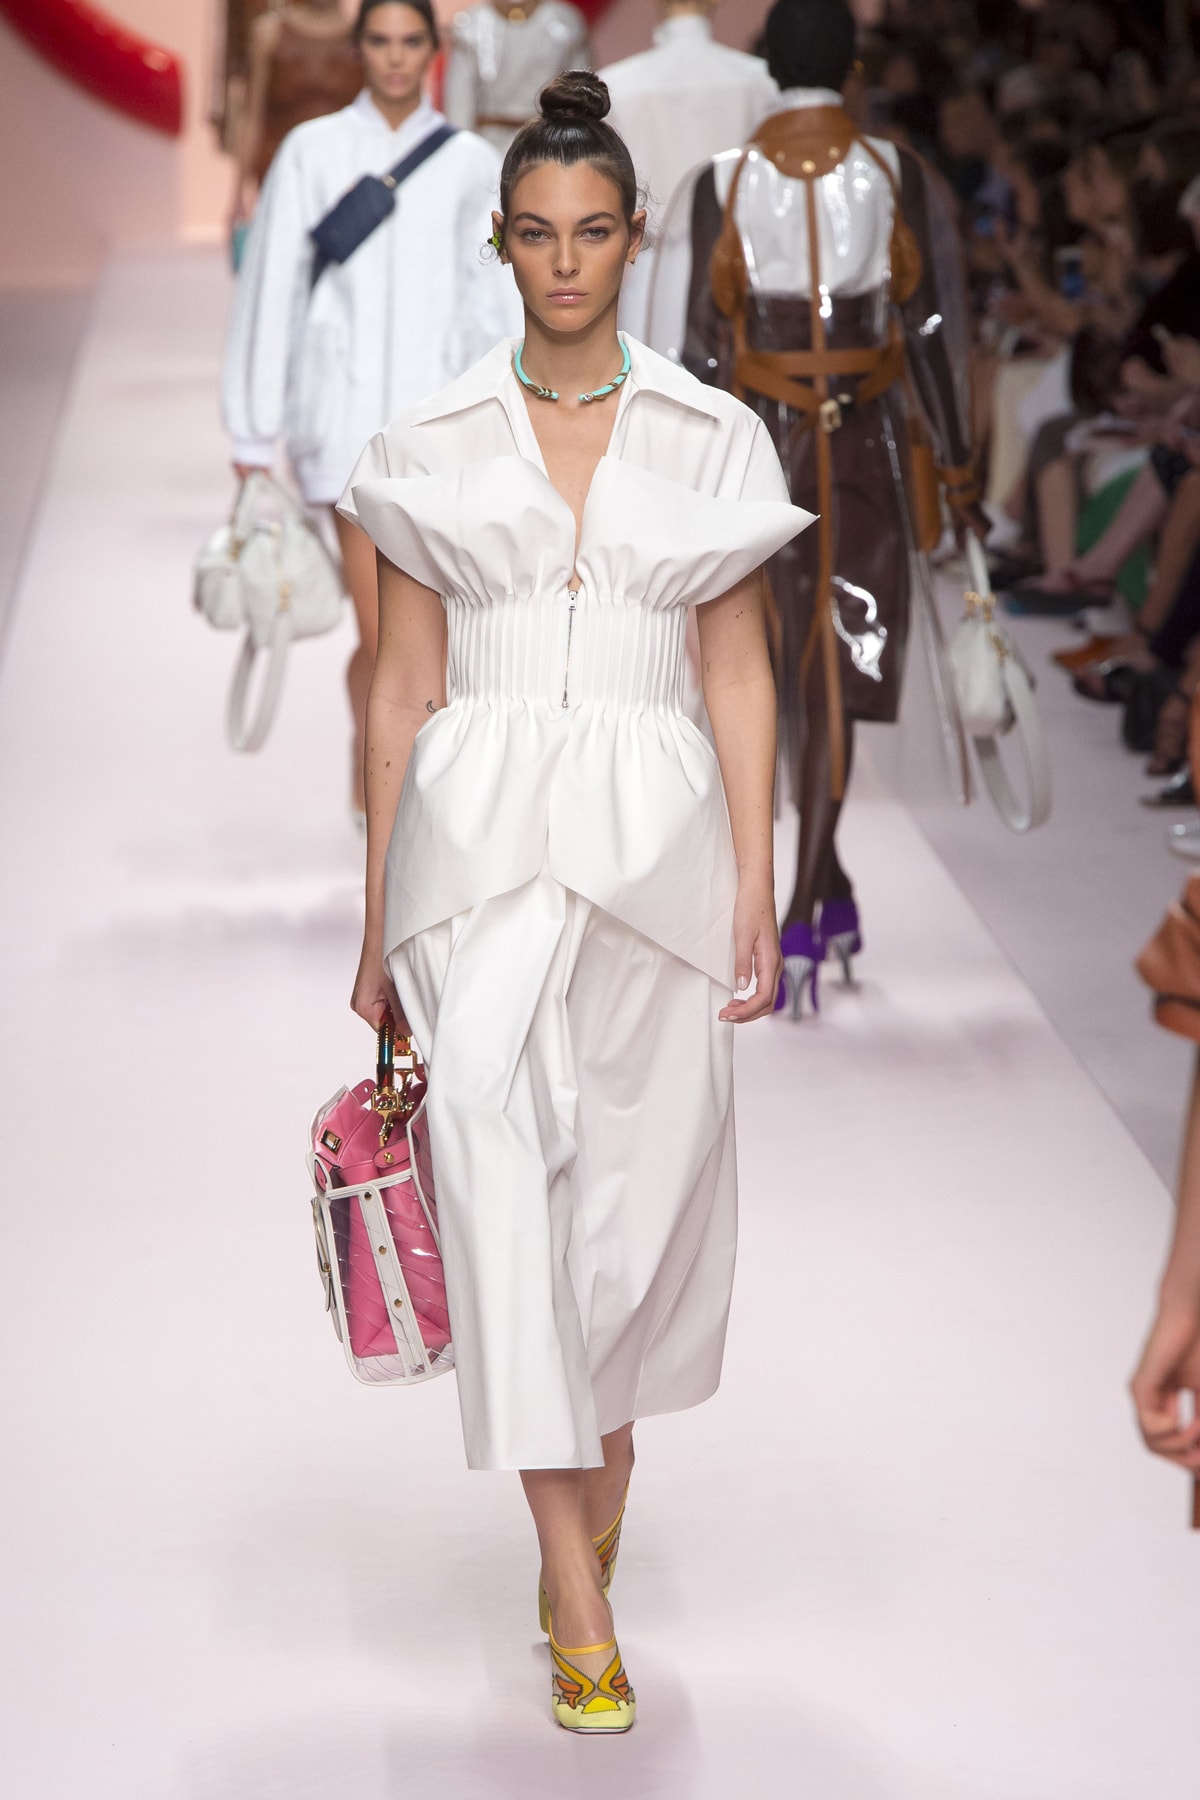 Fendi Karl Lagerfeld Spring Summer 2019 Milan Fashion Week Show Collection Top Skirt White